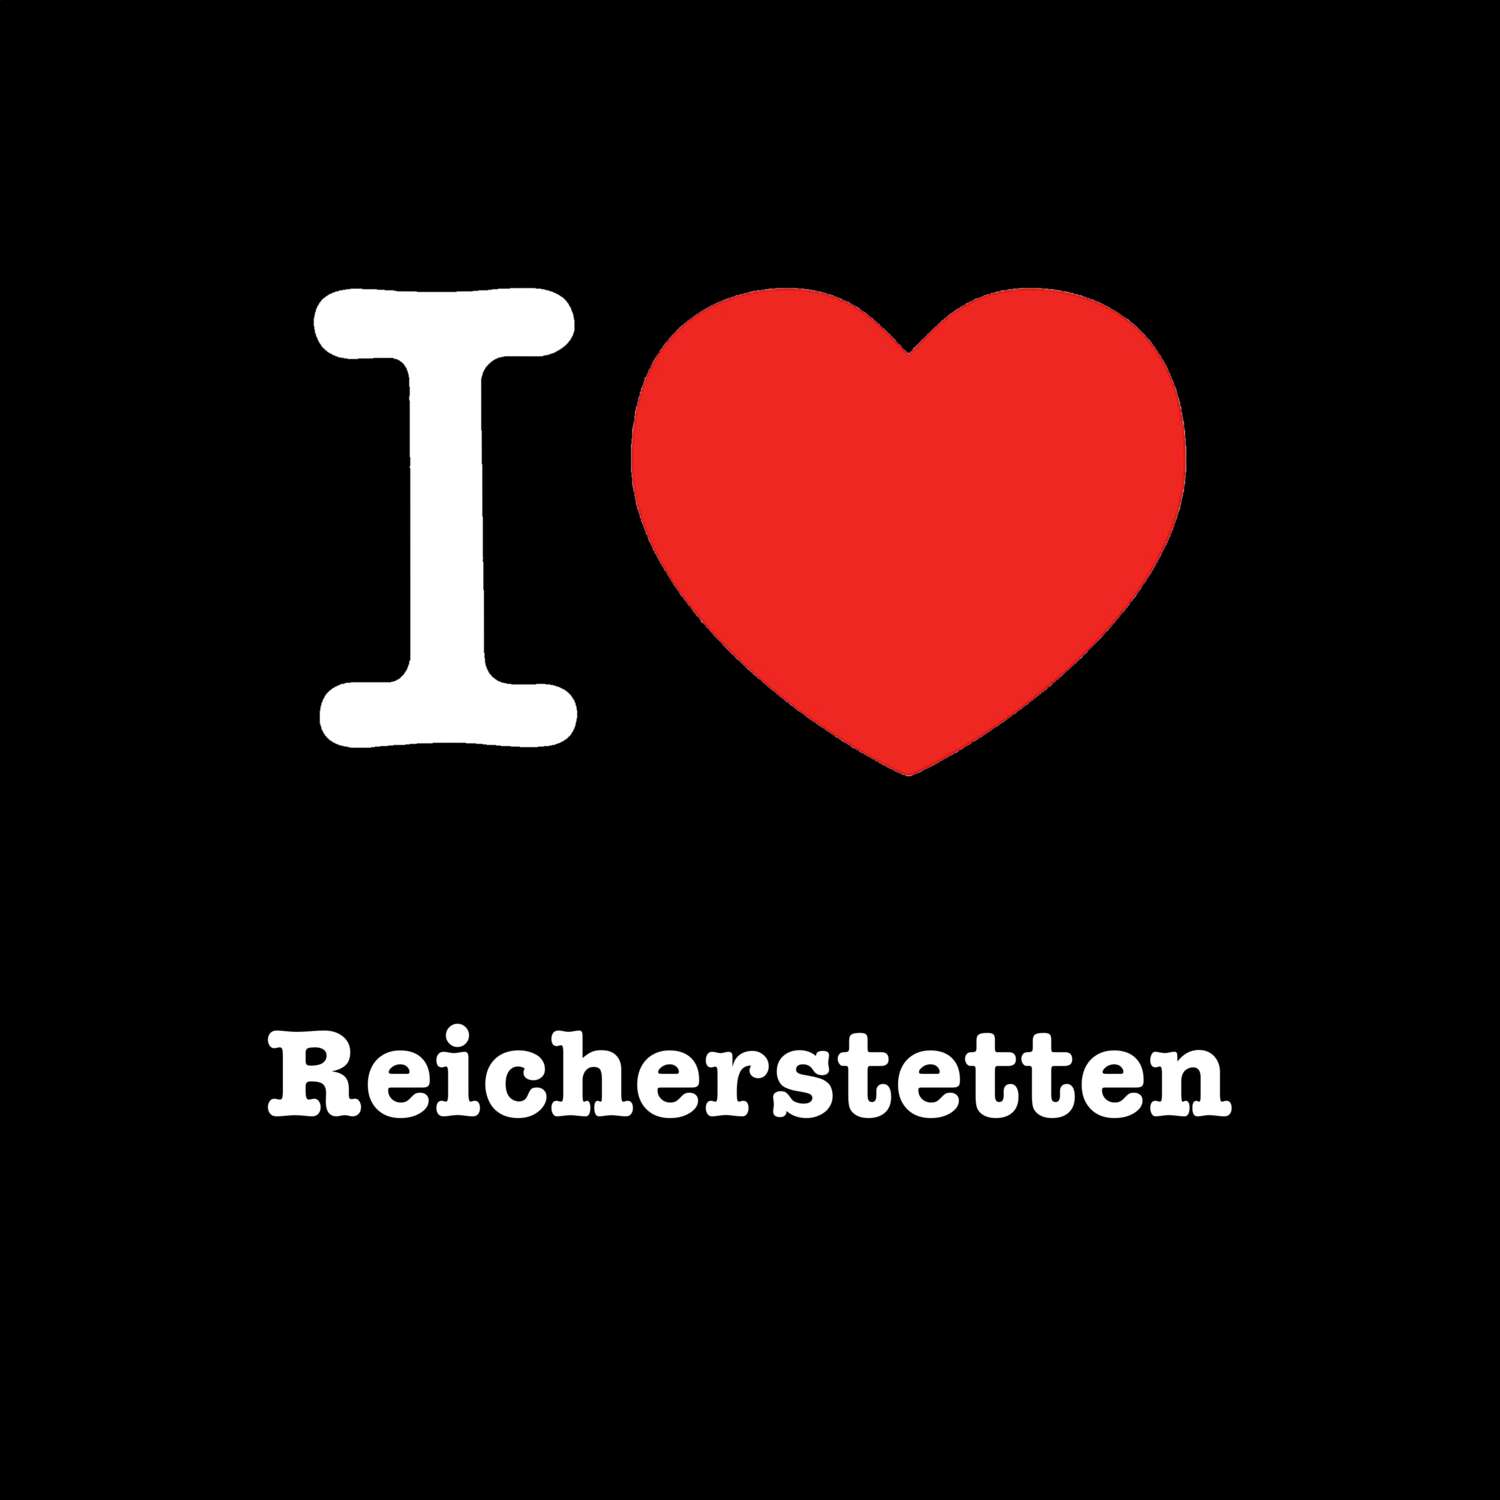 Reicherstetten T-Shirt »I love«